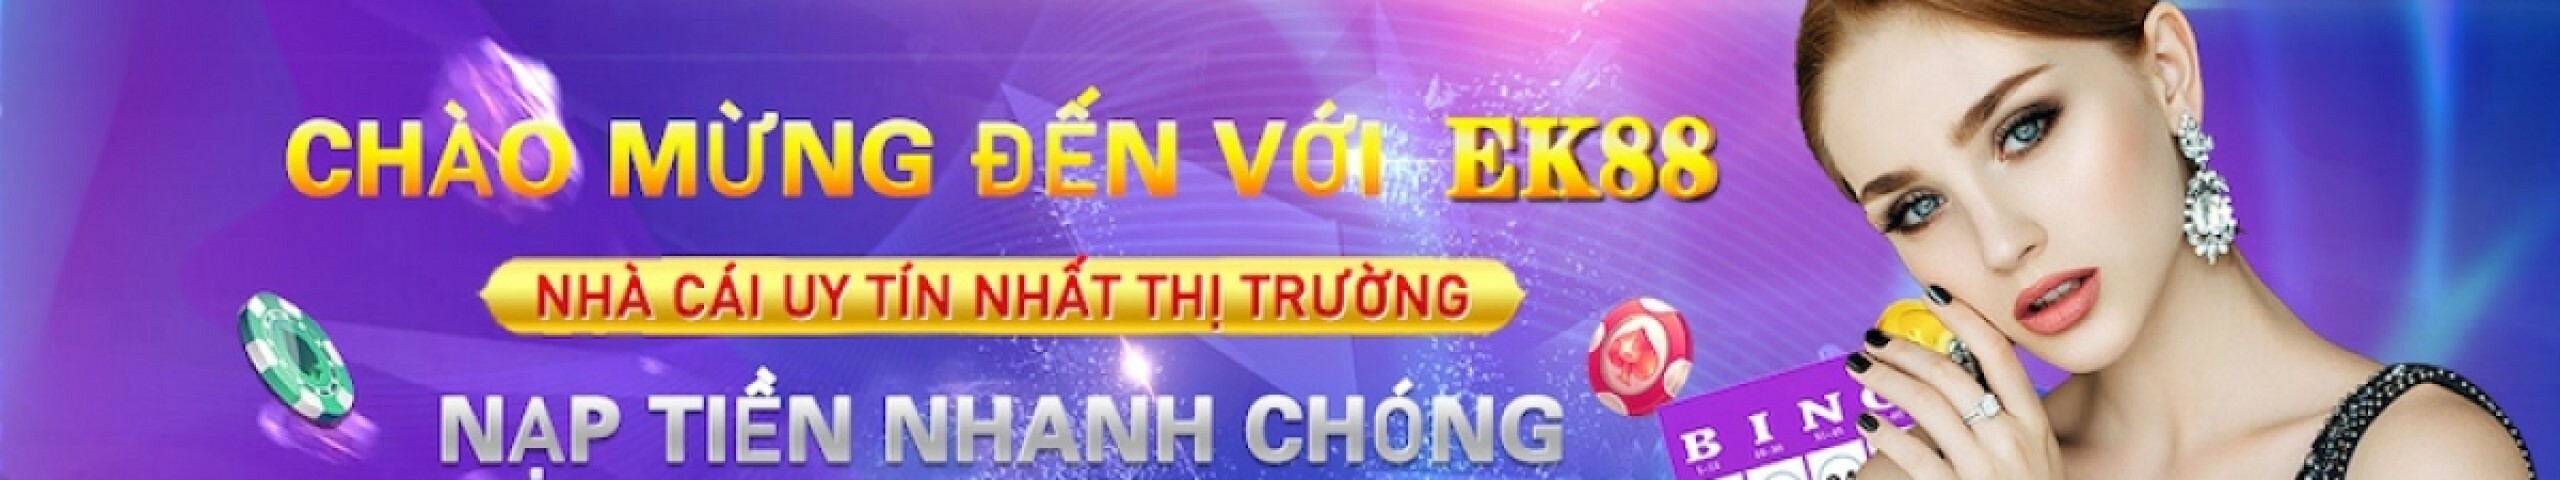 creator cover EK88 - EK88 Casino - Trang chủ đăng ký 